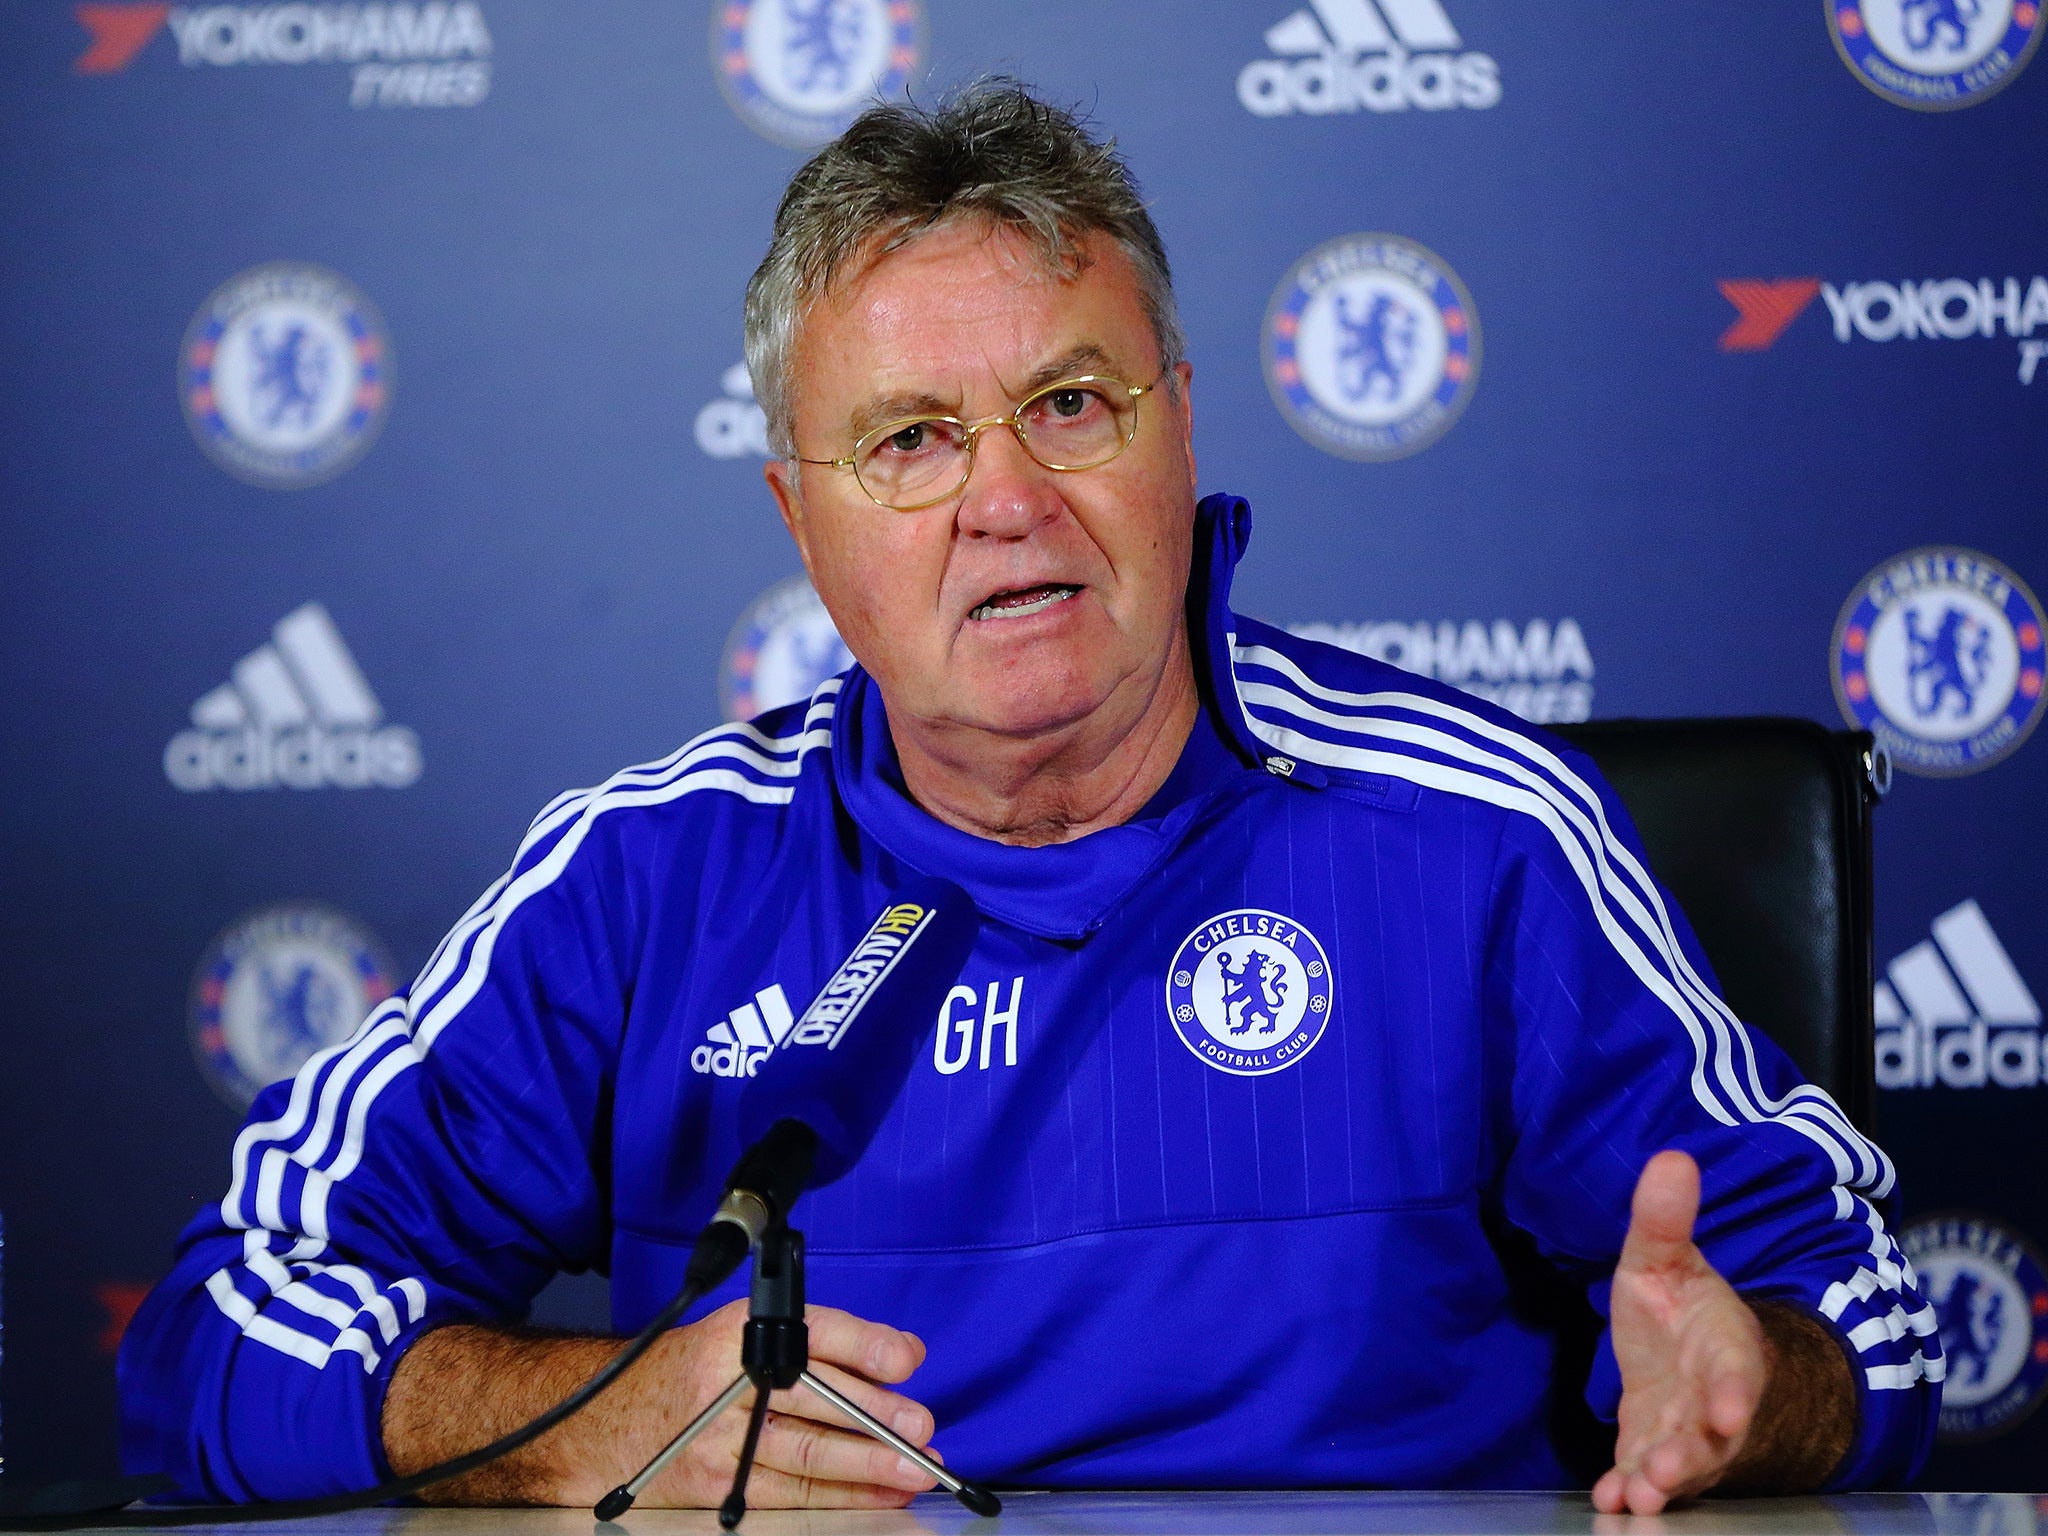 Chelsea interim manager Guus Hiddink